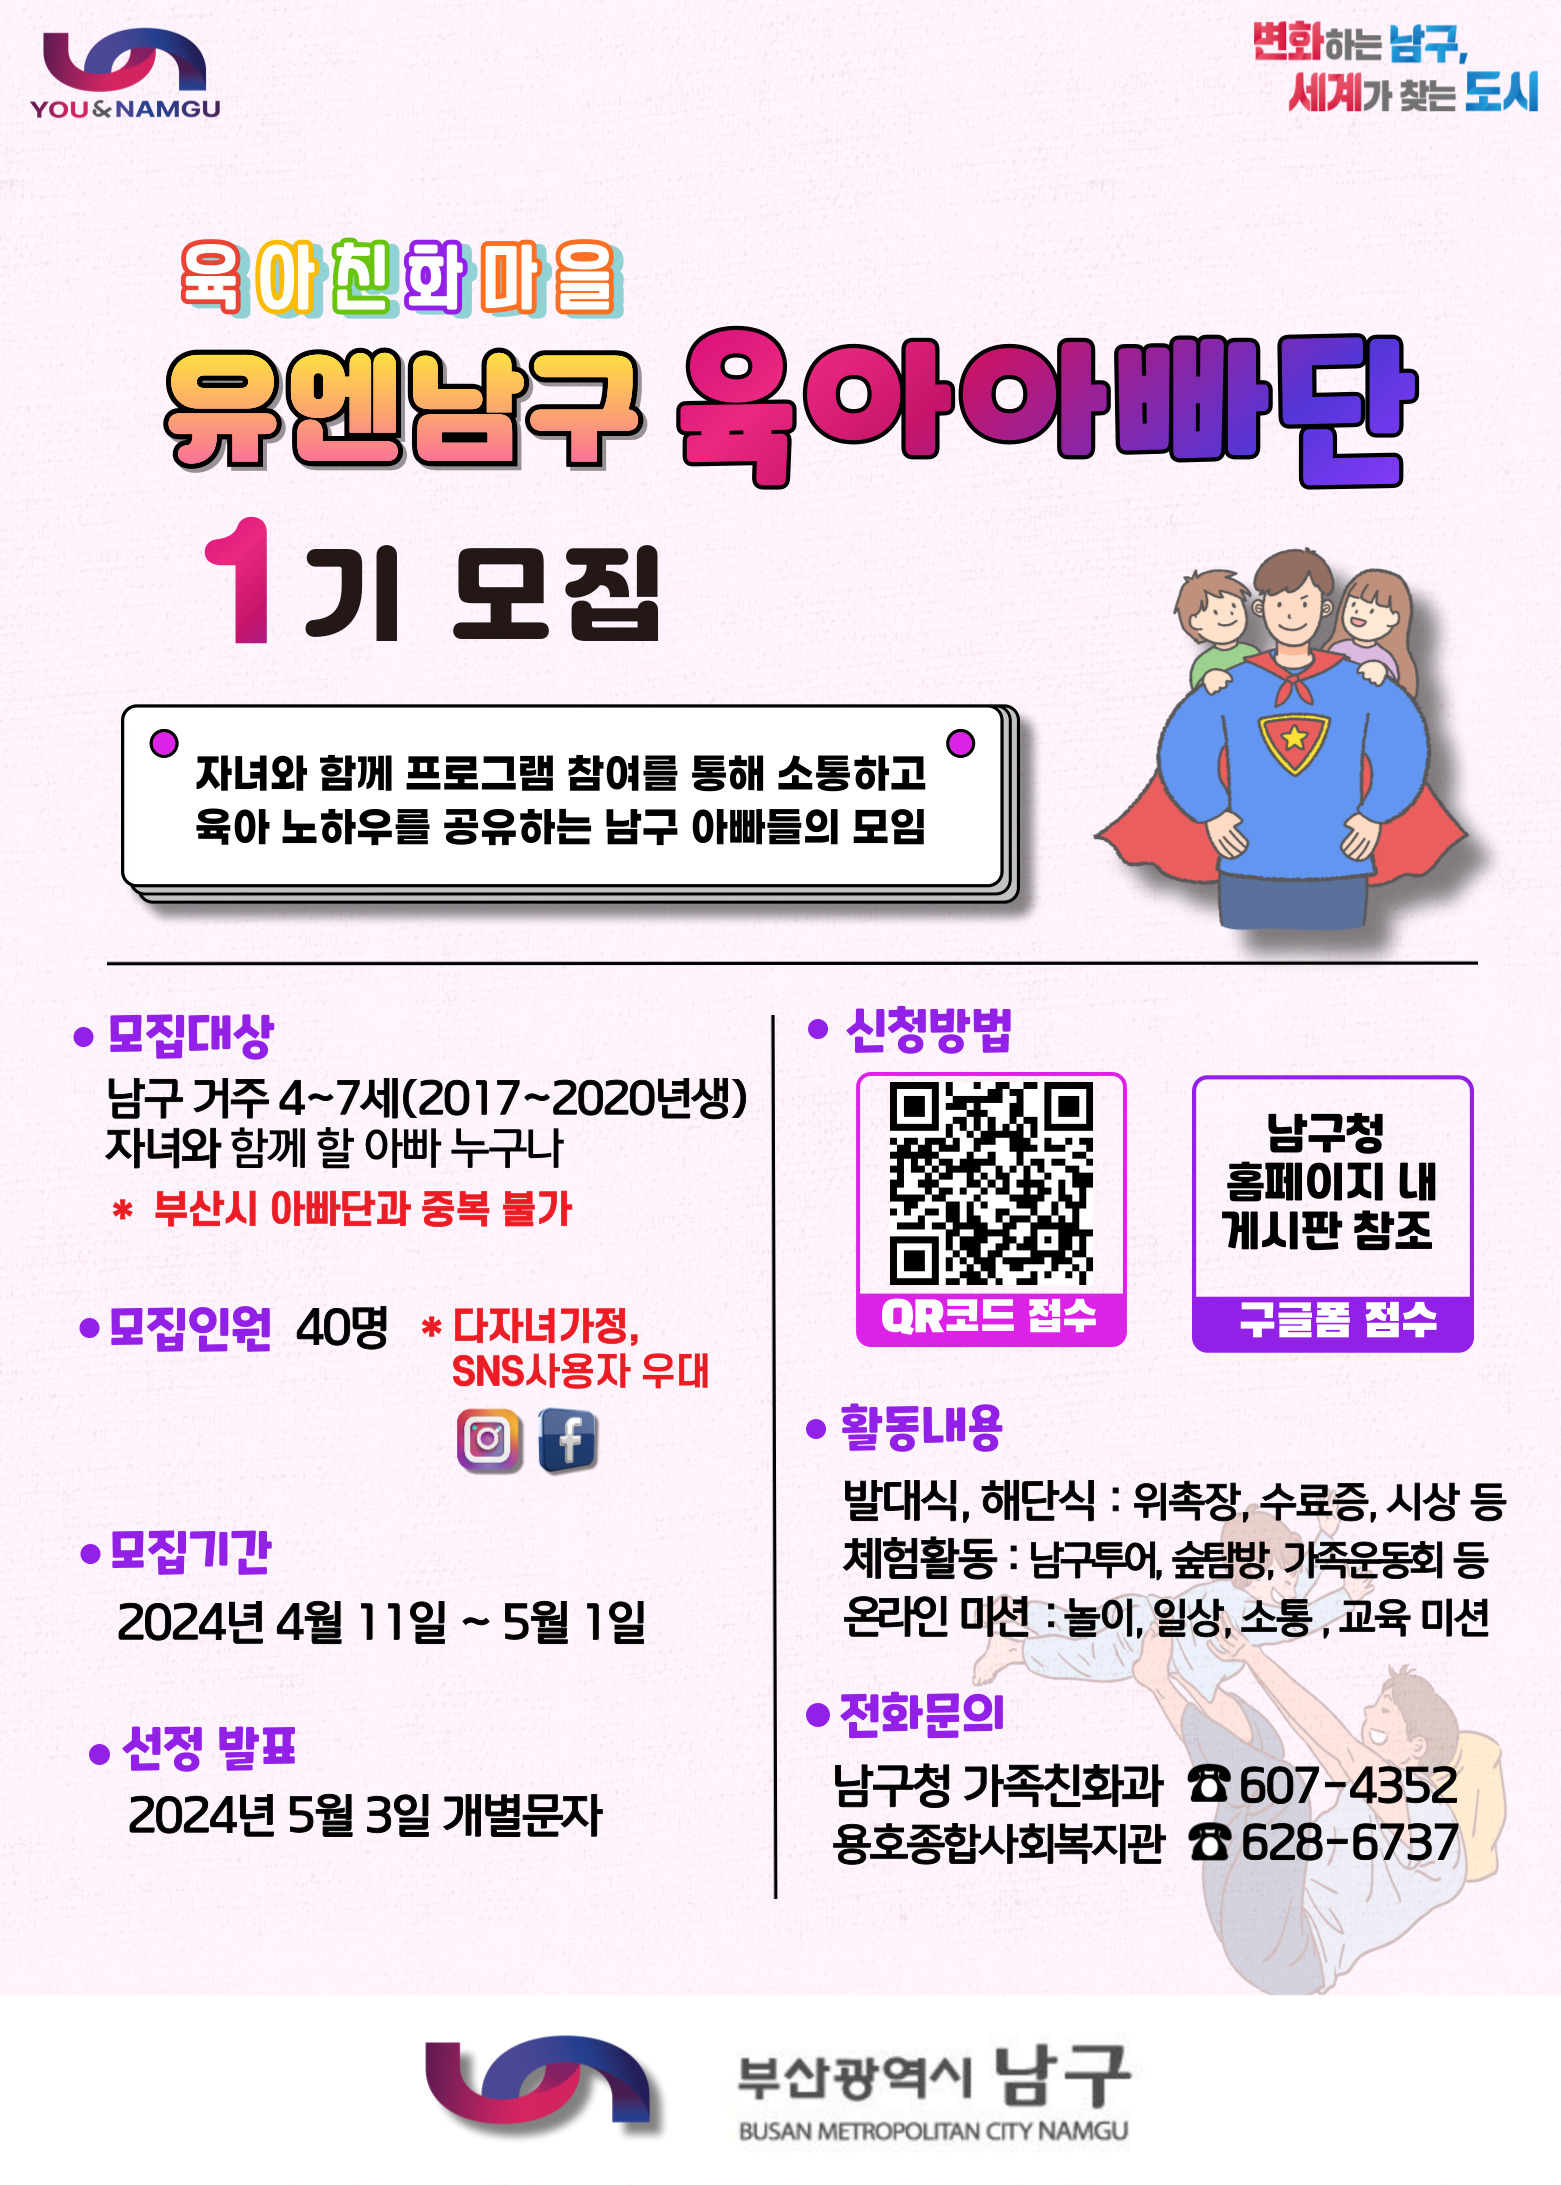 육아친화마을 「유엔남구 육아아빠단」 1기 모집